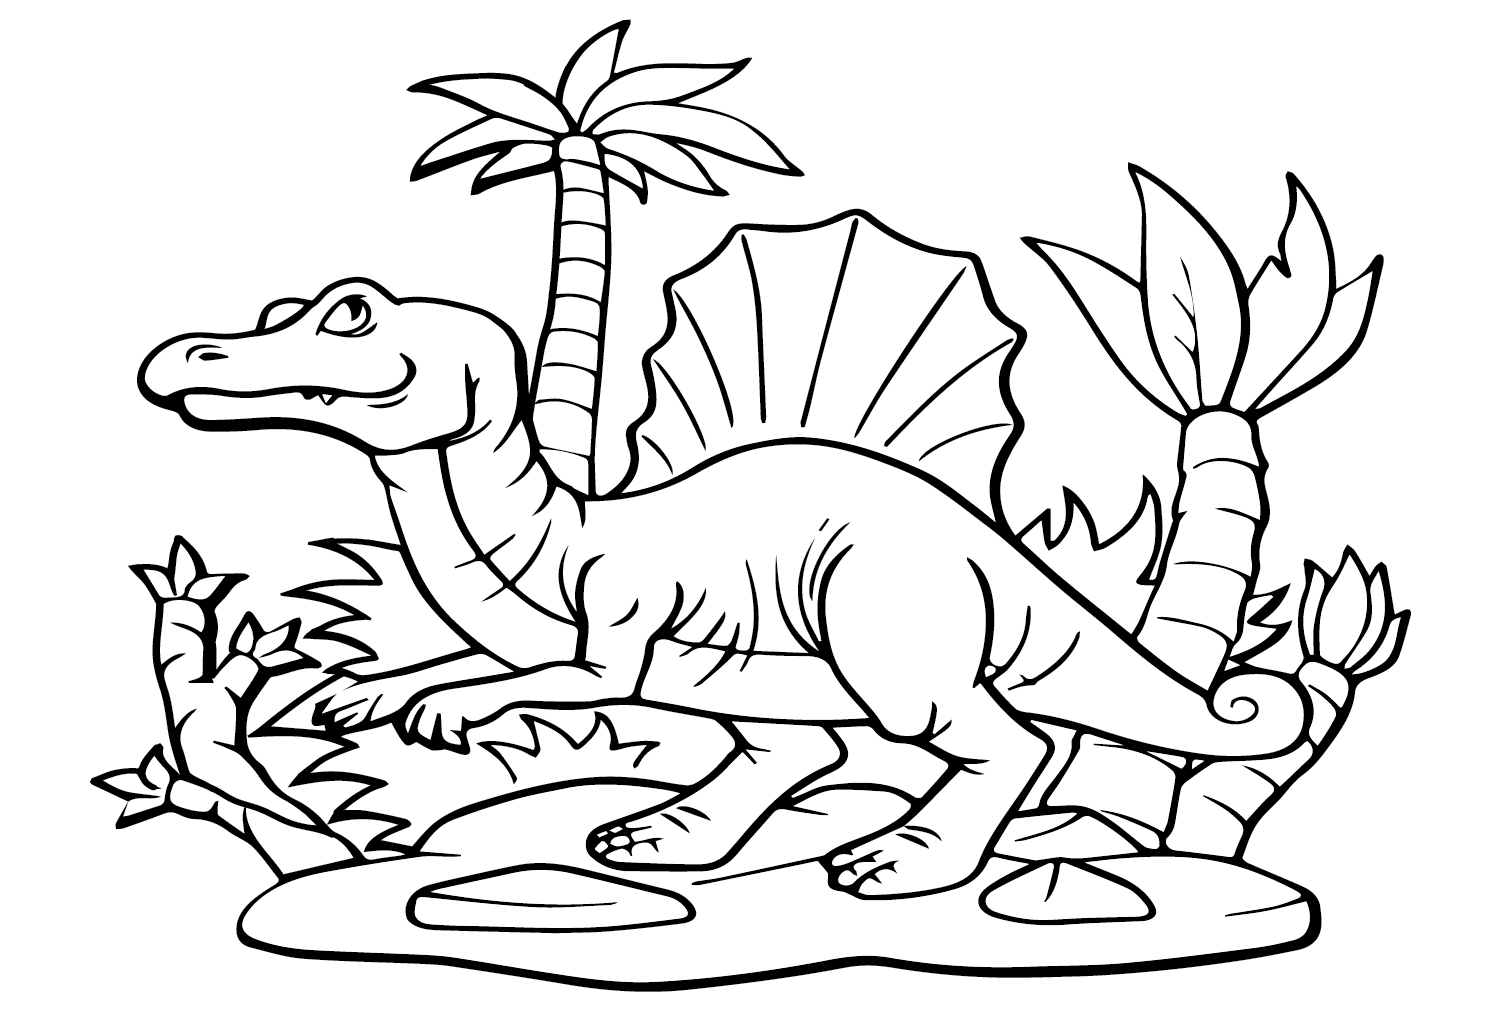 كتاب تلوين سبينوصور إيجيبتياكوس من سبينوصور إيجيبتياكوس